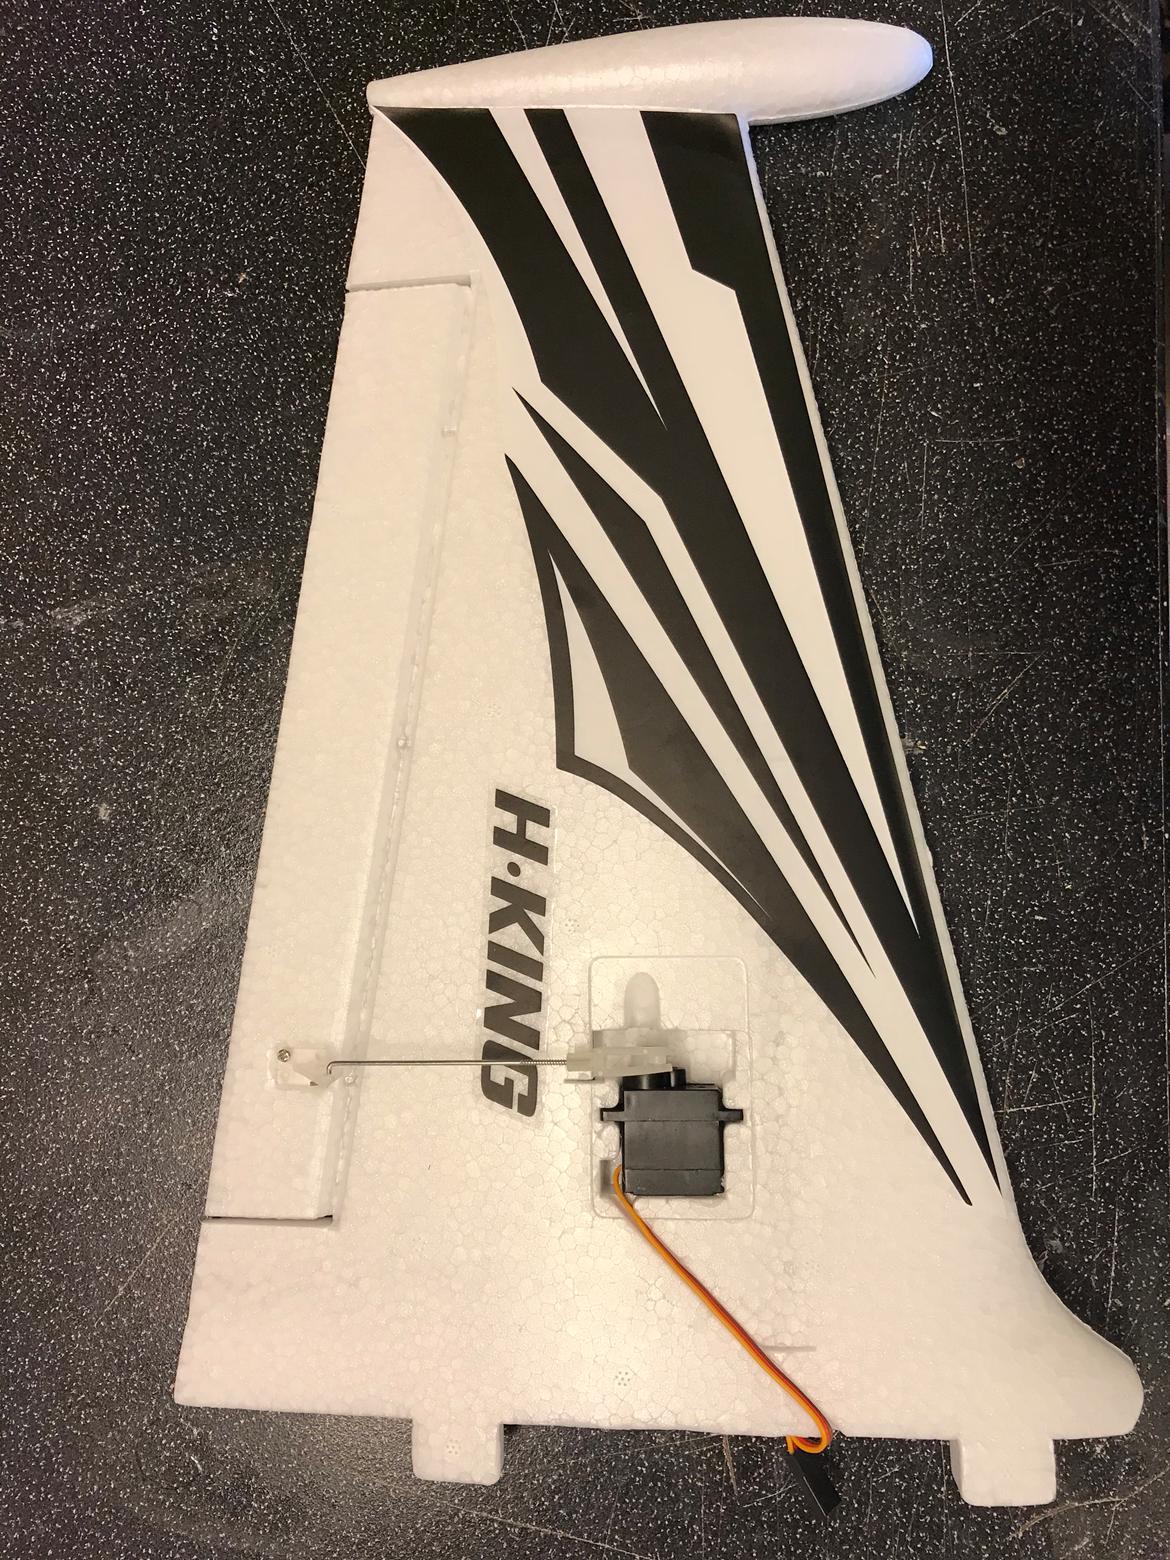 Fly Radjet 800 - 9 gram servo er limet fra Hobby King billede 3